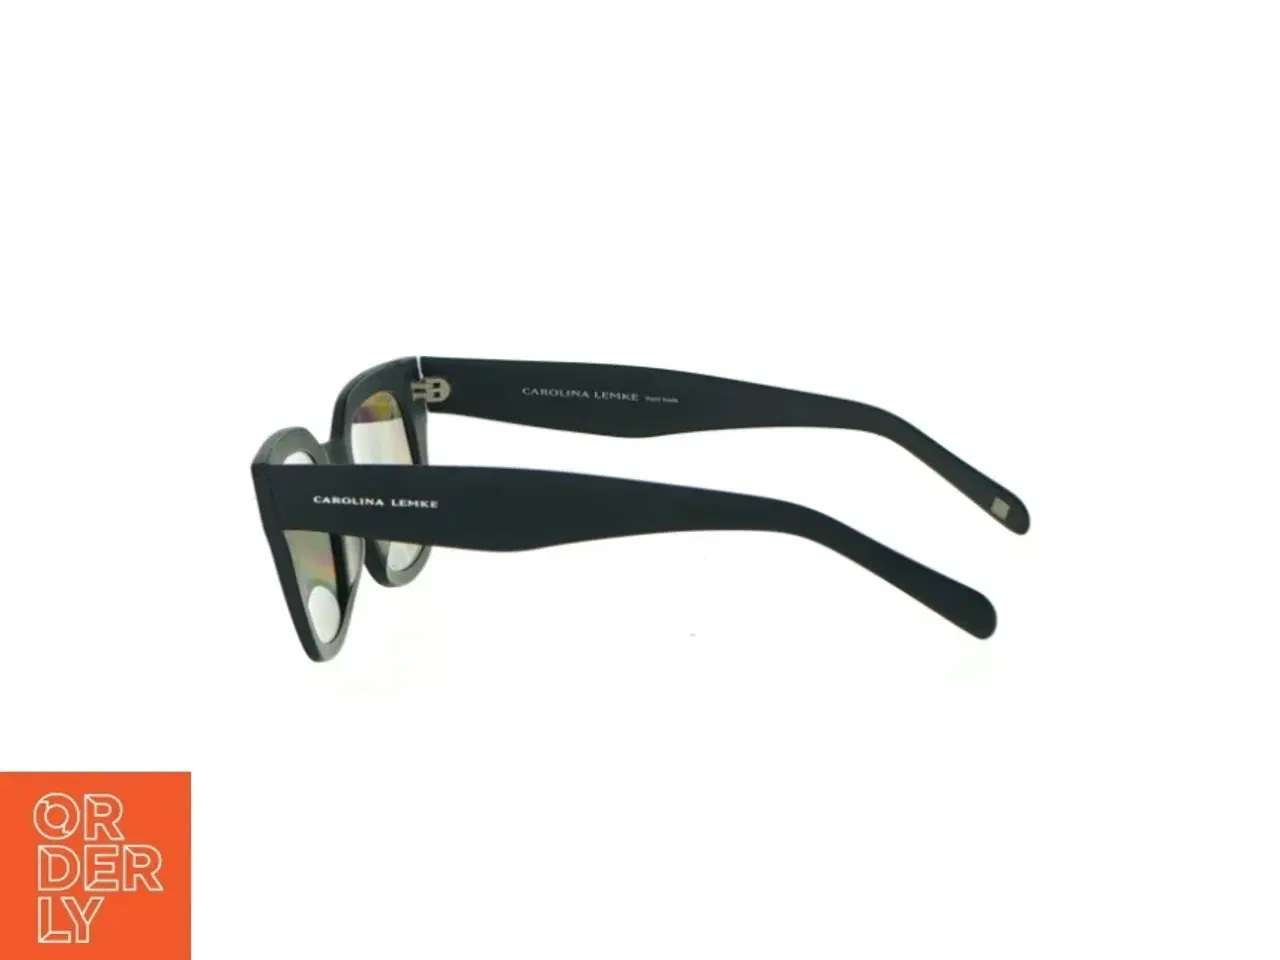 Billede 1 - Solbriller fra Carolina Lemke (str. 14 x 5 cm)